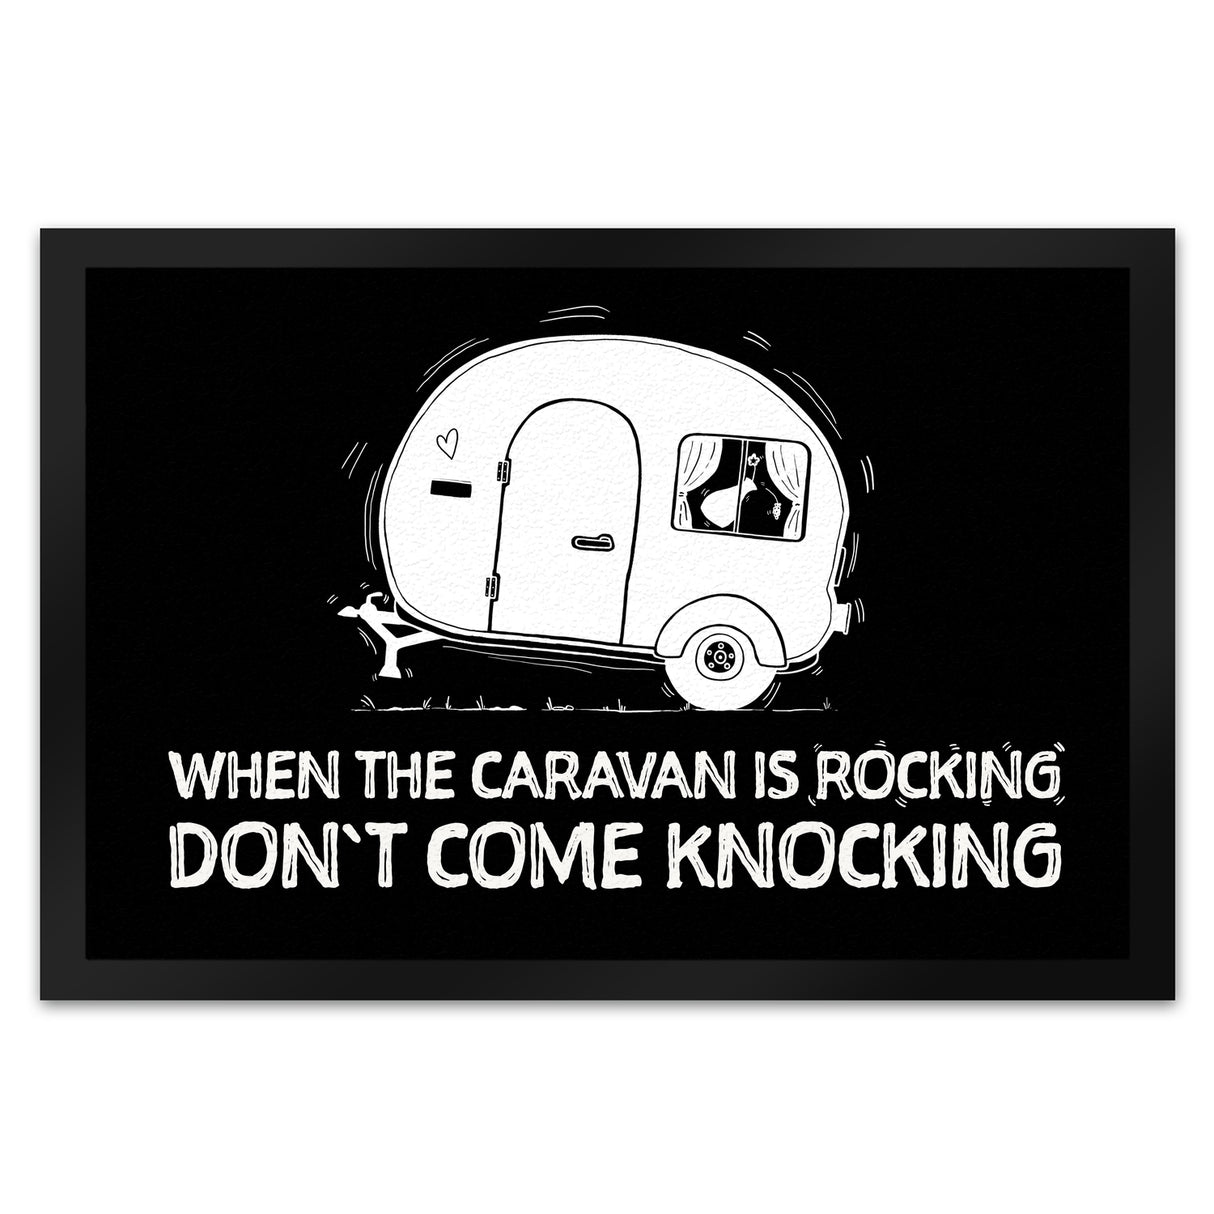 When the caravan is rocking Fußmatte mit Wohnwagen Motiv